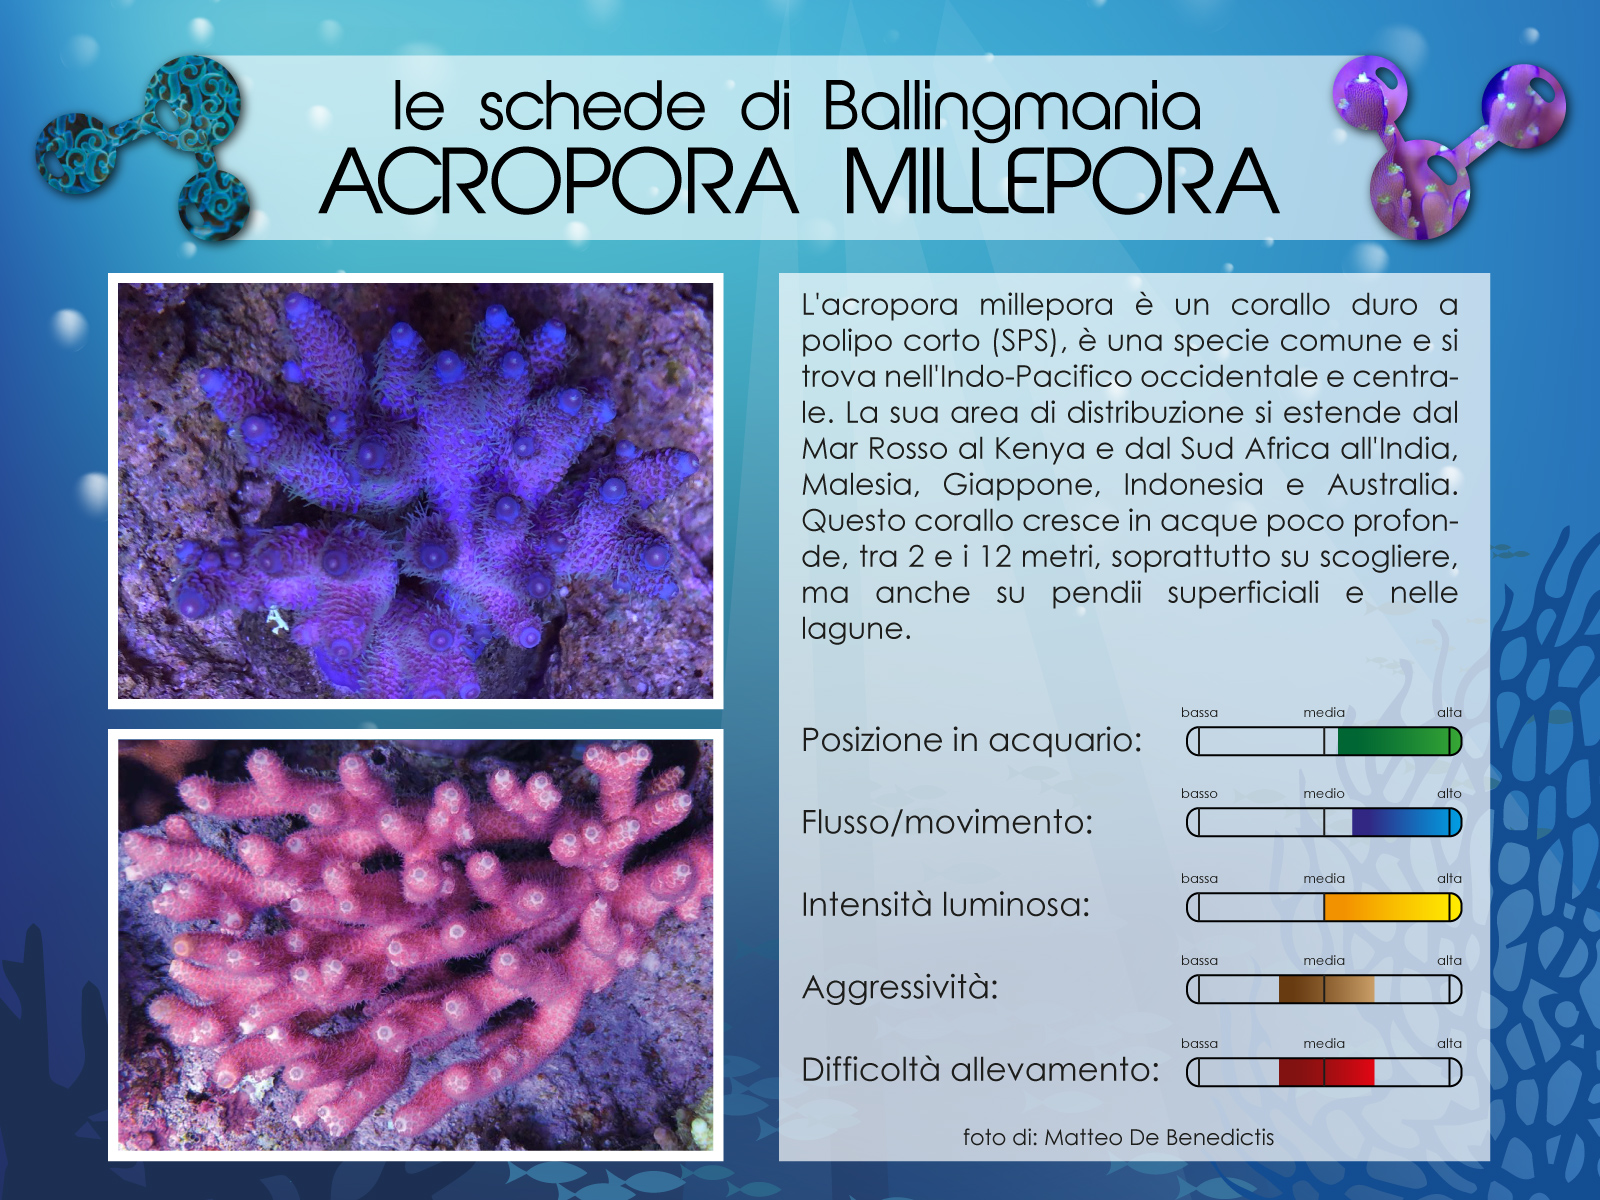 Acropora Millepora